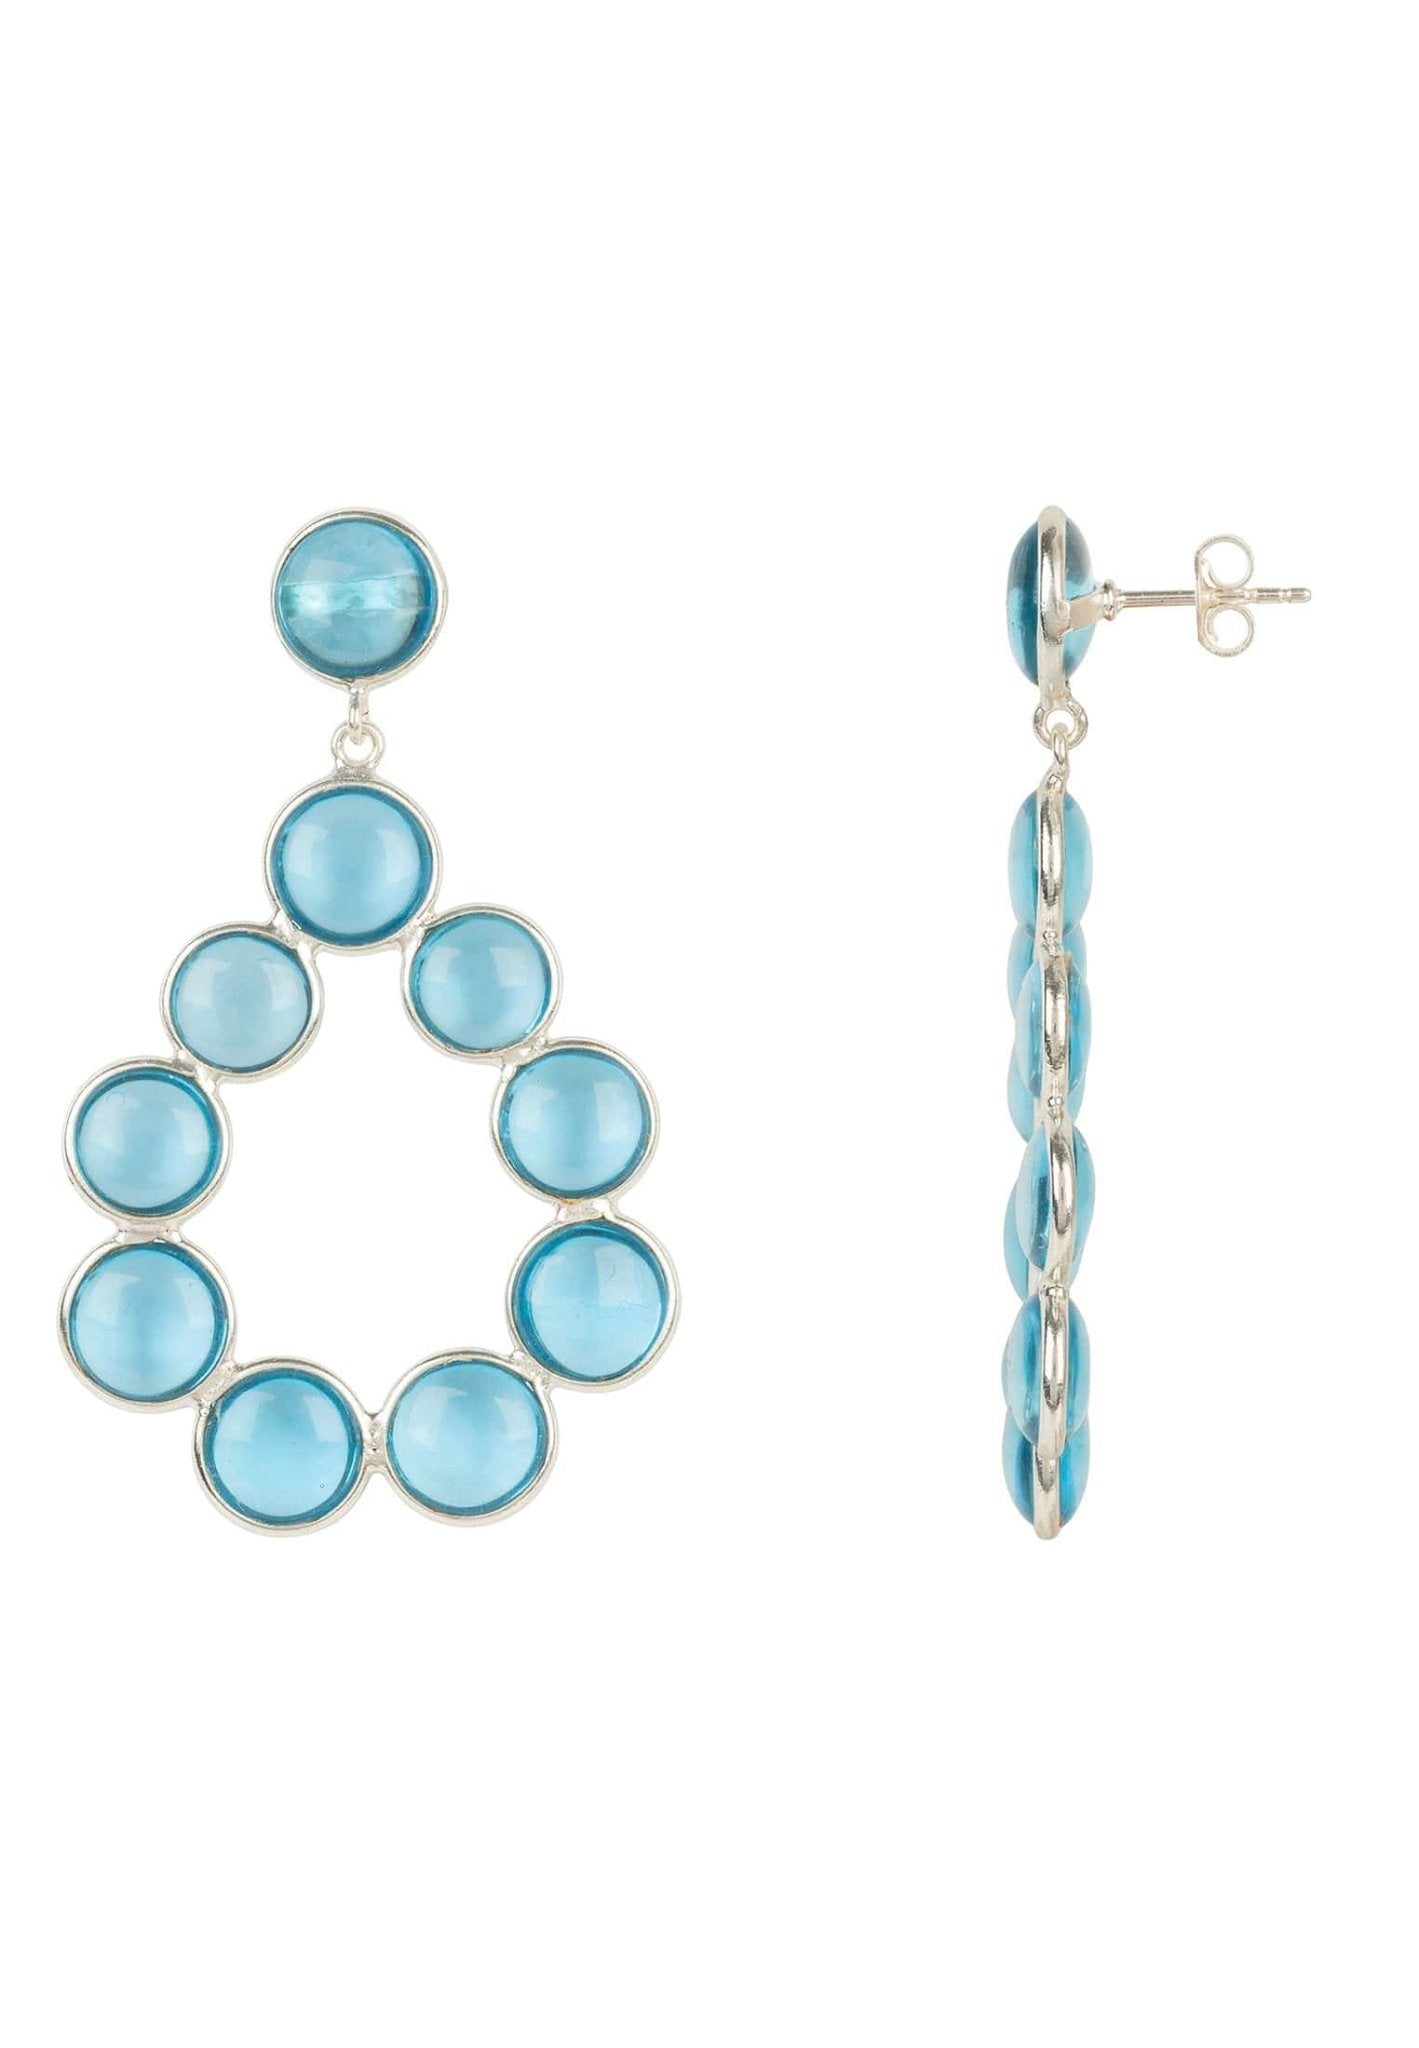 Hatun Gemstone Statement Earrings Silver Blue Topaz Hydro - LATELITA Earrings